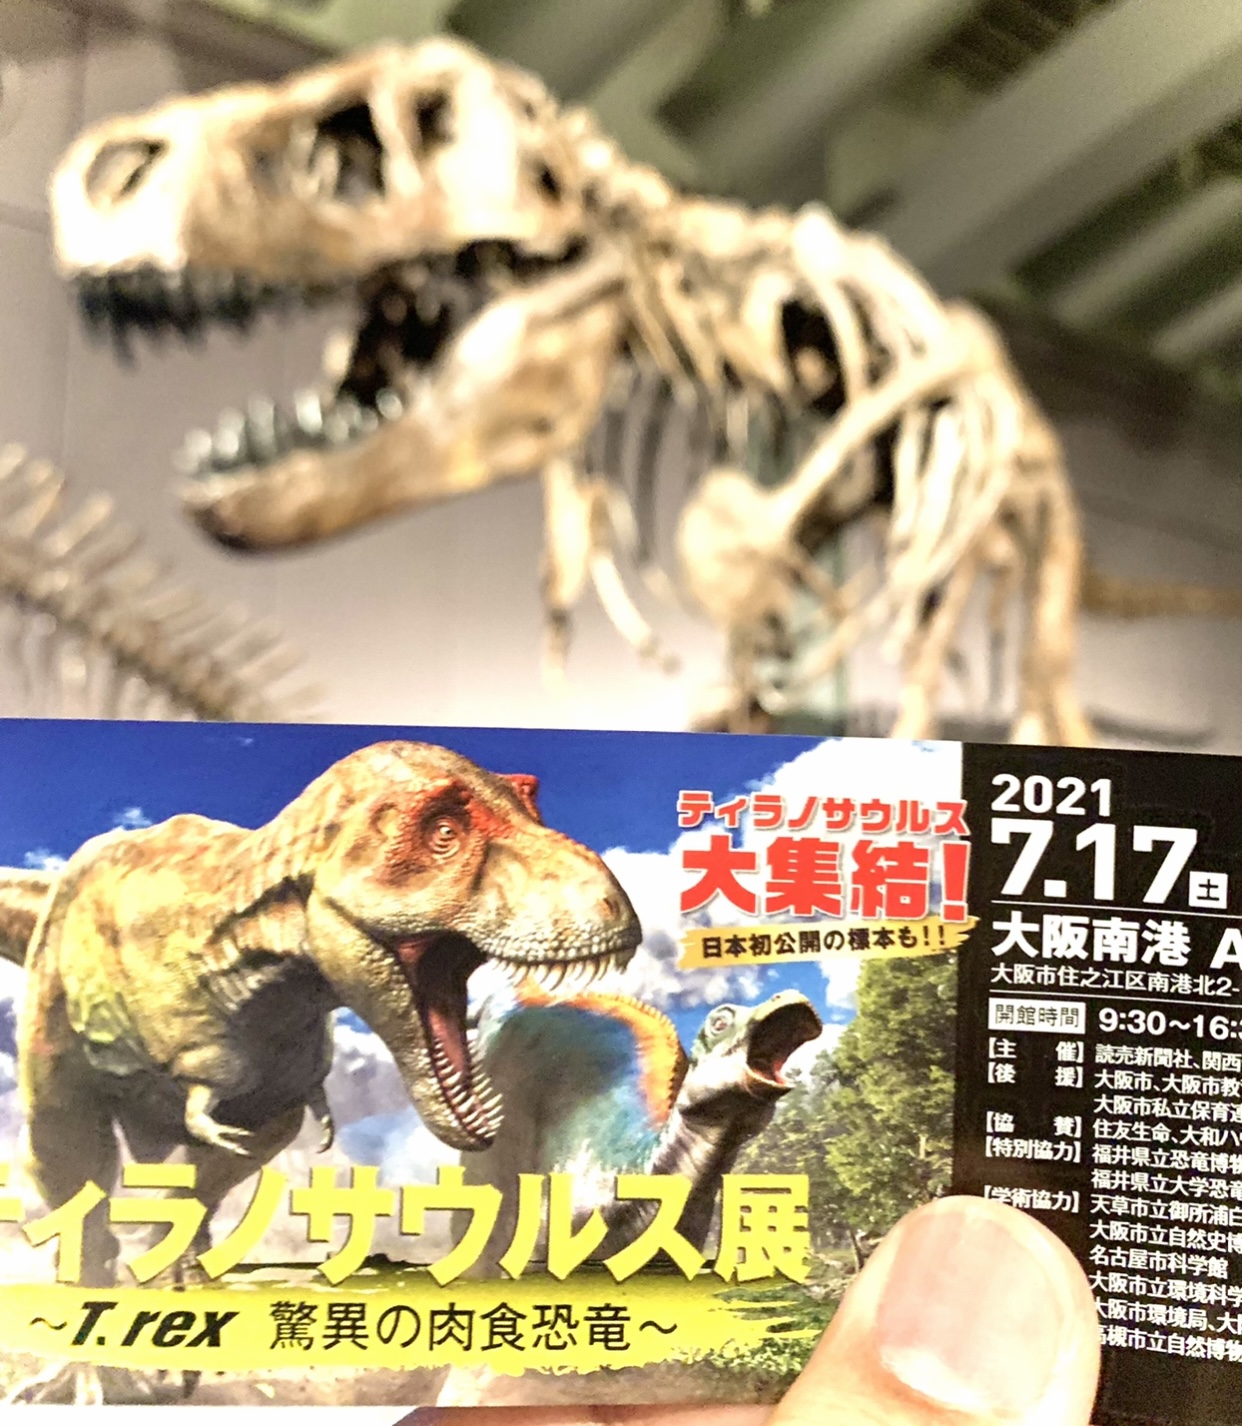 ティラノサウルス展。恐竜。atcギャラリー。藤美堂。